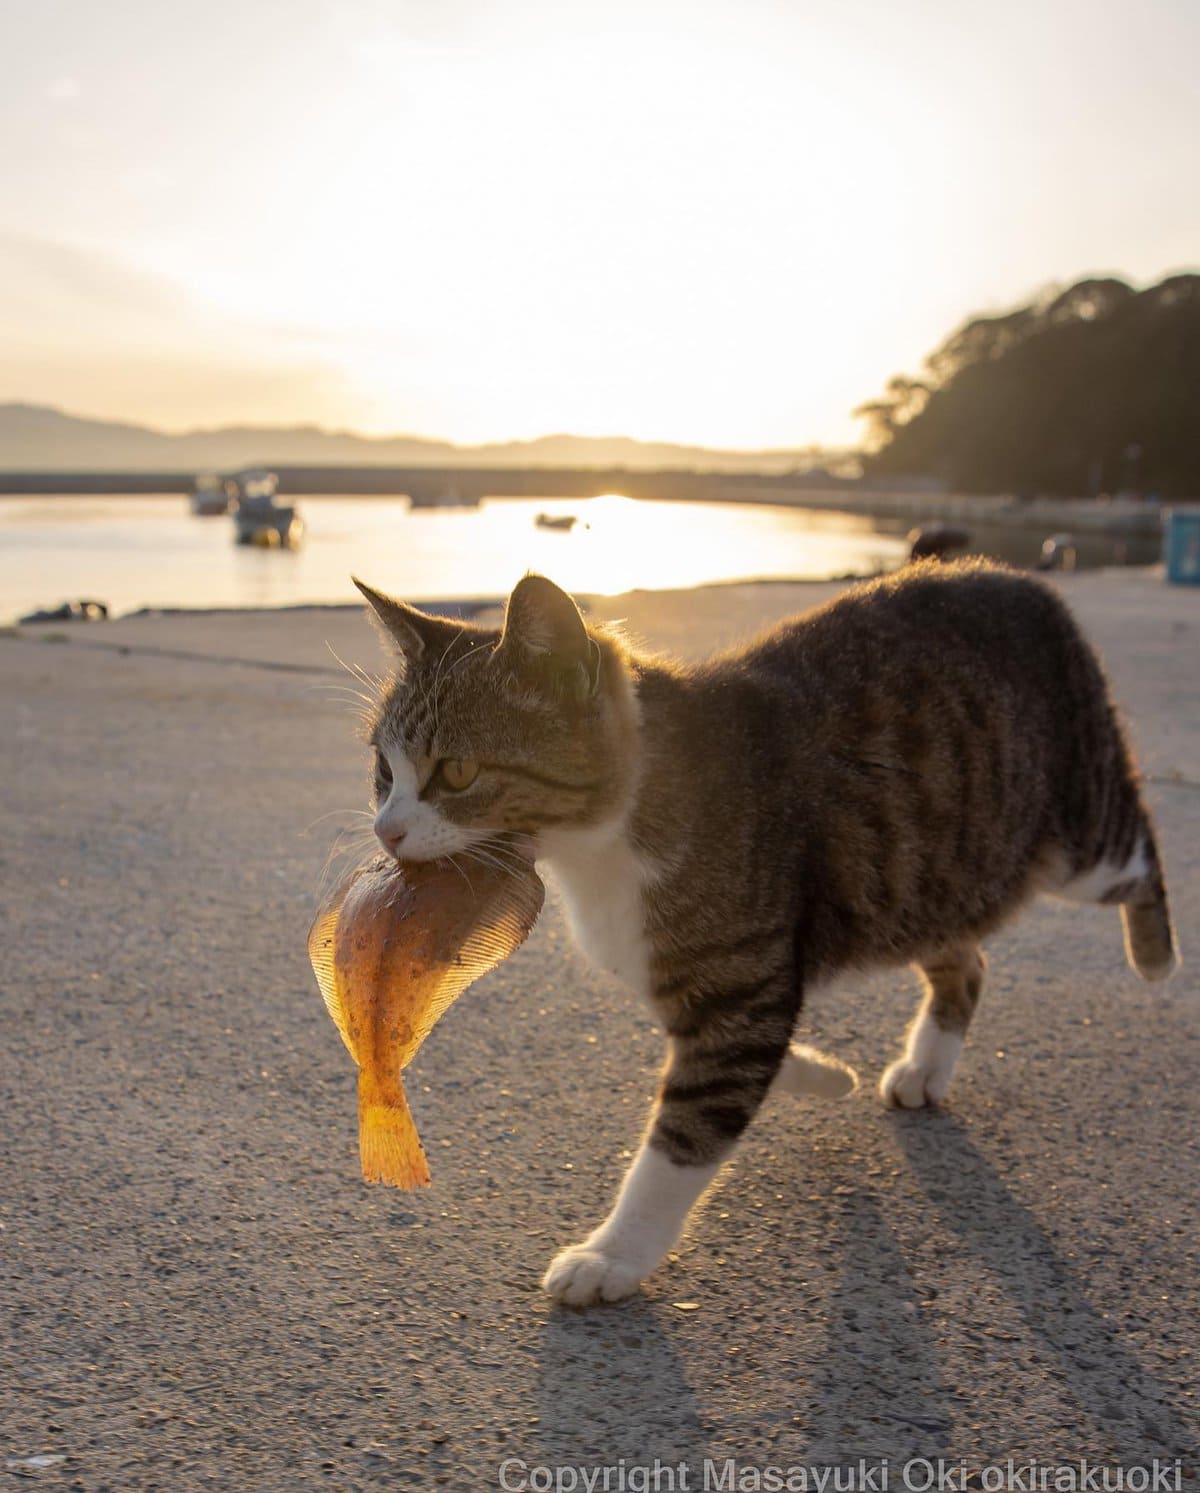 17 работ японского фотографа, который лучше всех в мире умеет снимать уличных котов 54